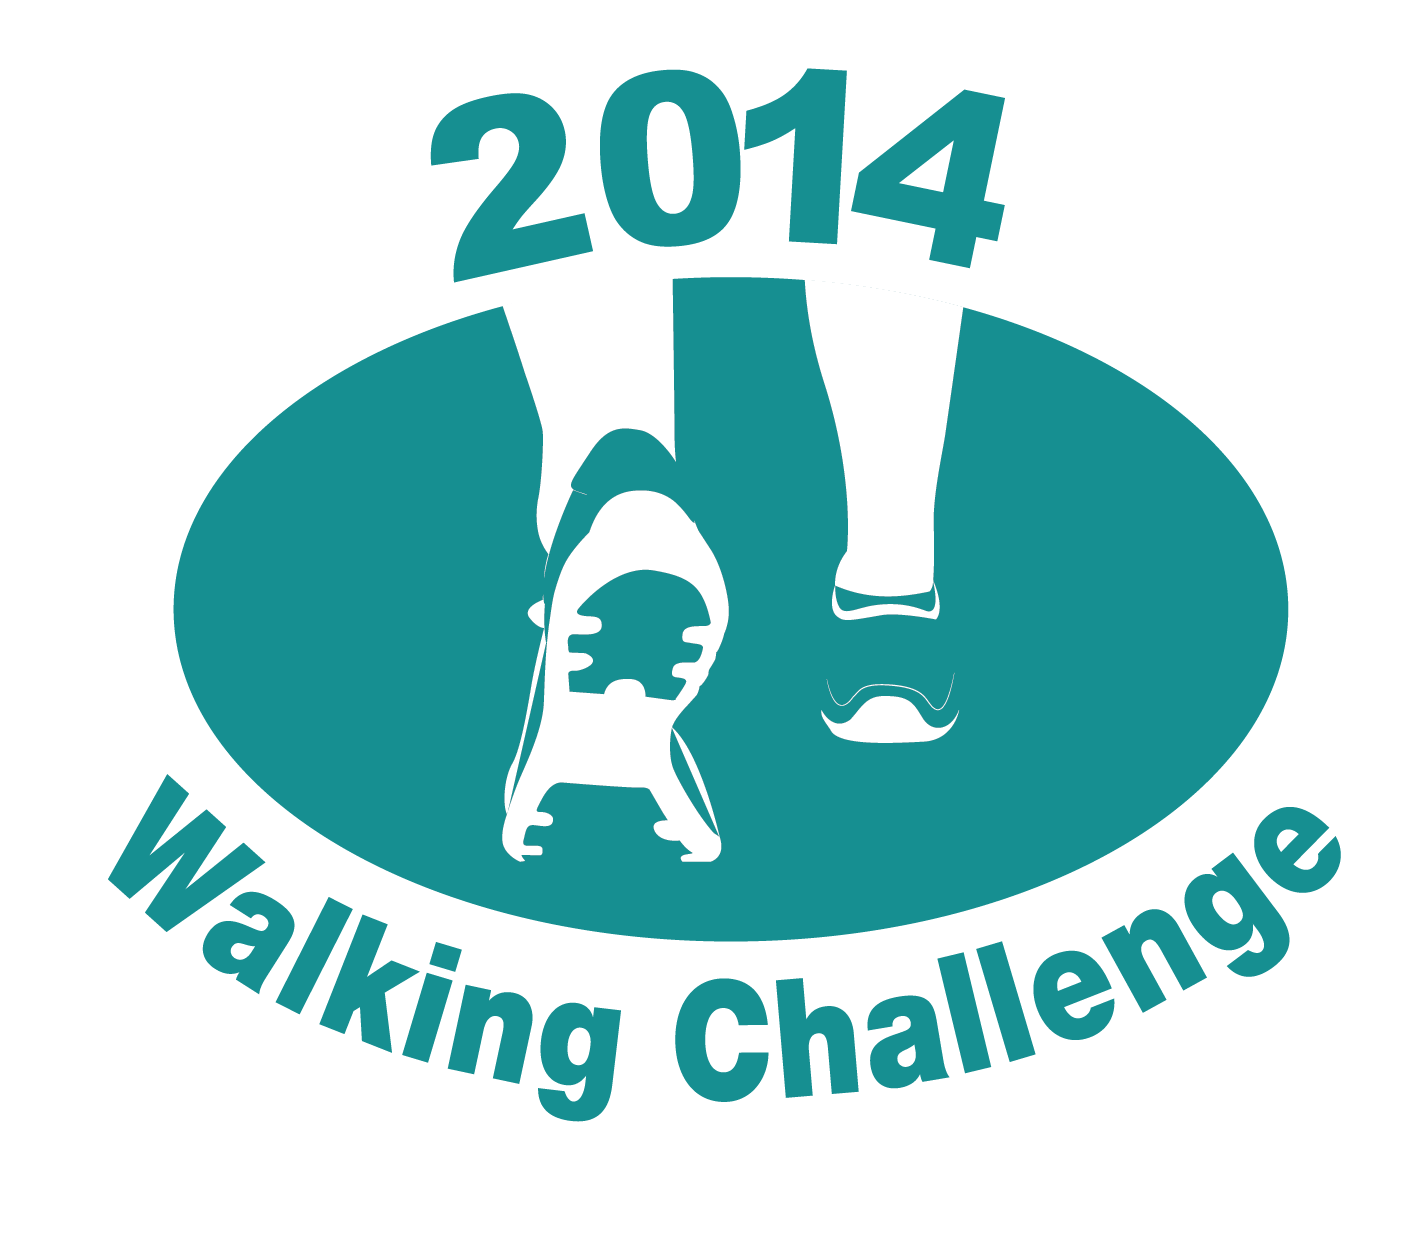 Walking Logo - Walking challenge Service Local